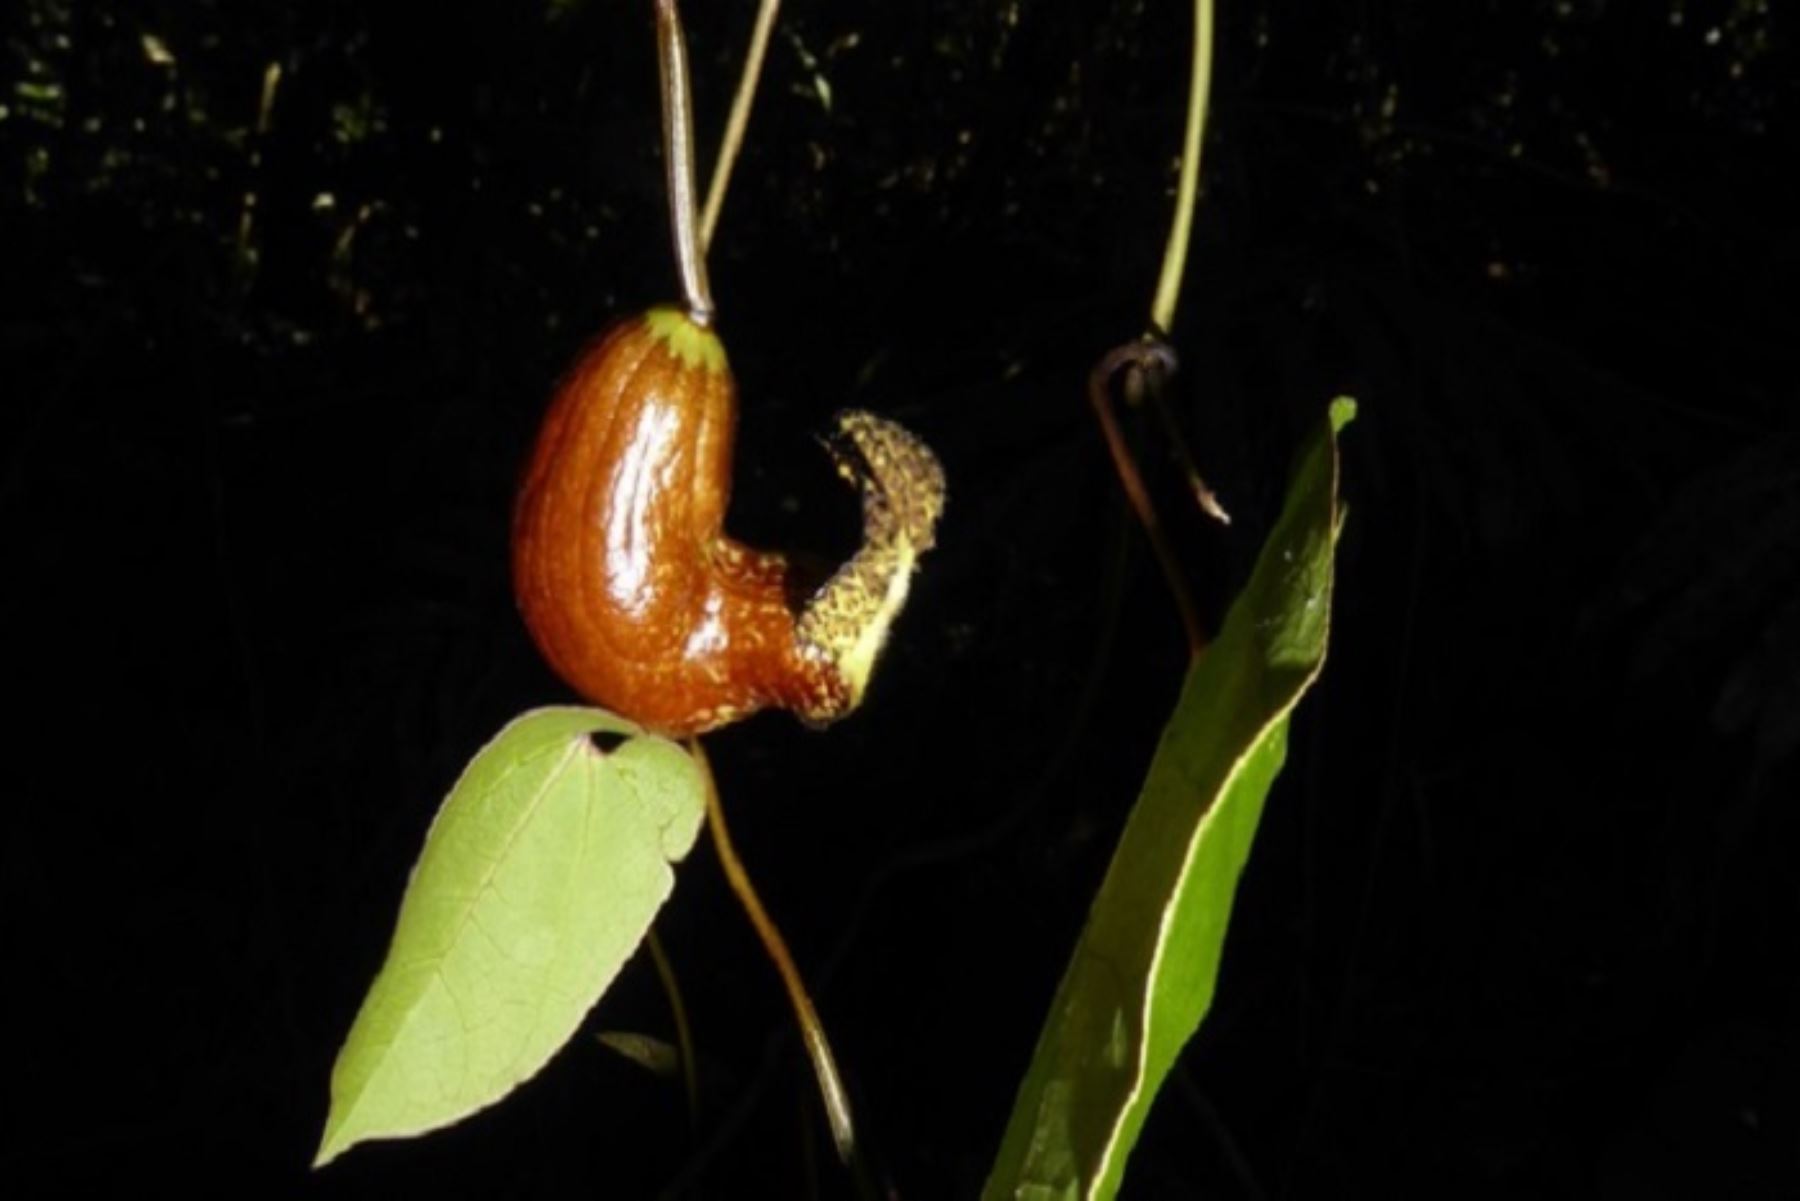 El descubrimiento de "Aristolochia brachylimba" es un hito importante en el estudio de la biodiversidad de la región amazónica